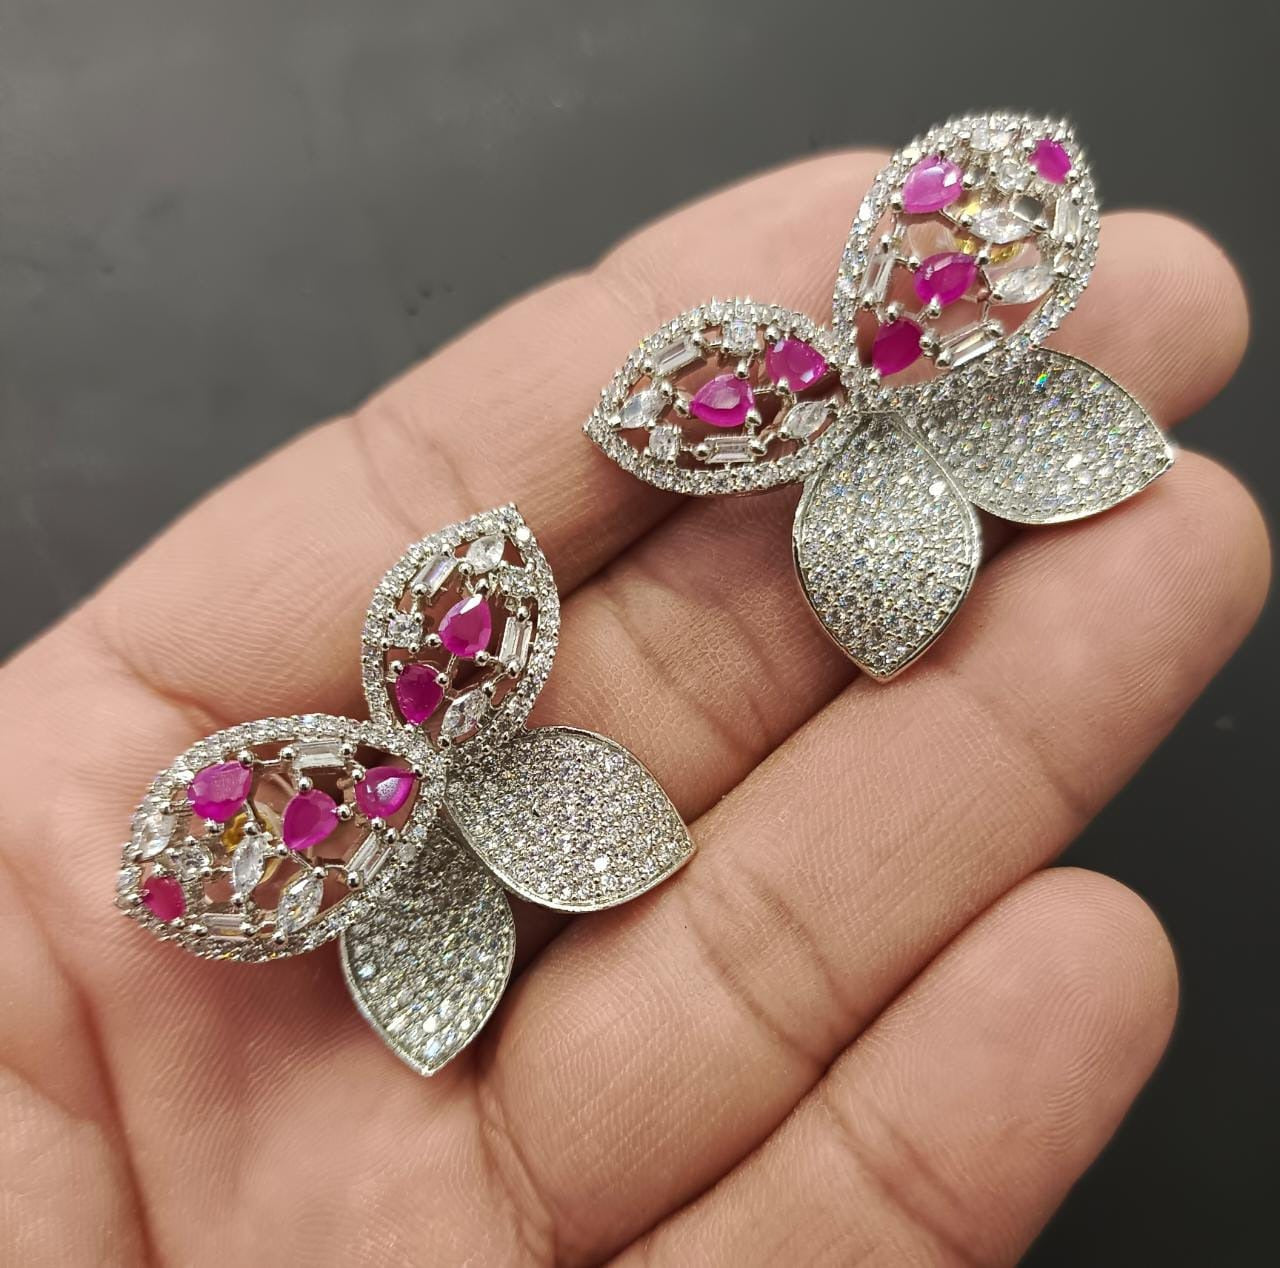 Get Beautiful Butterfly Silver Stud Earrings